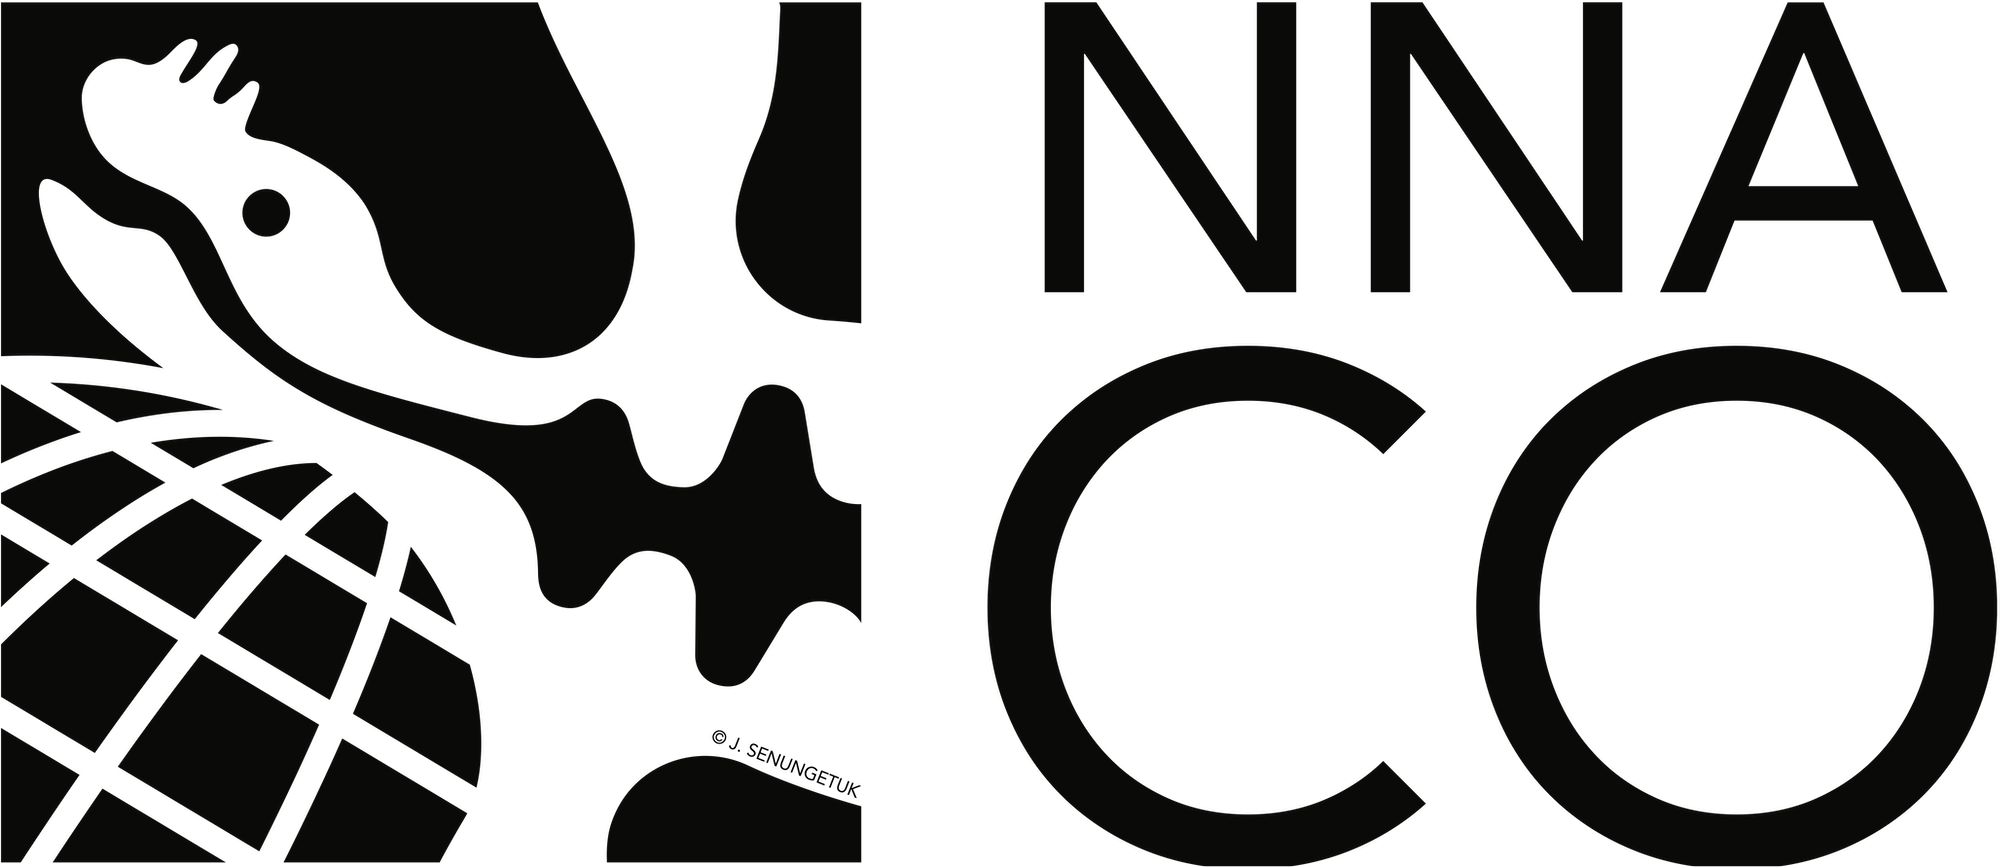 NNA-CO Logo - Seal and Globe